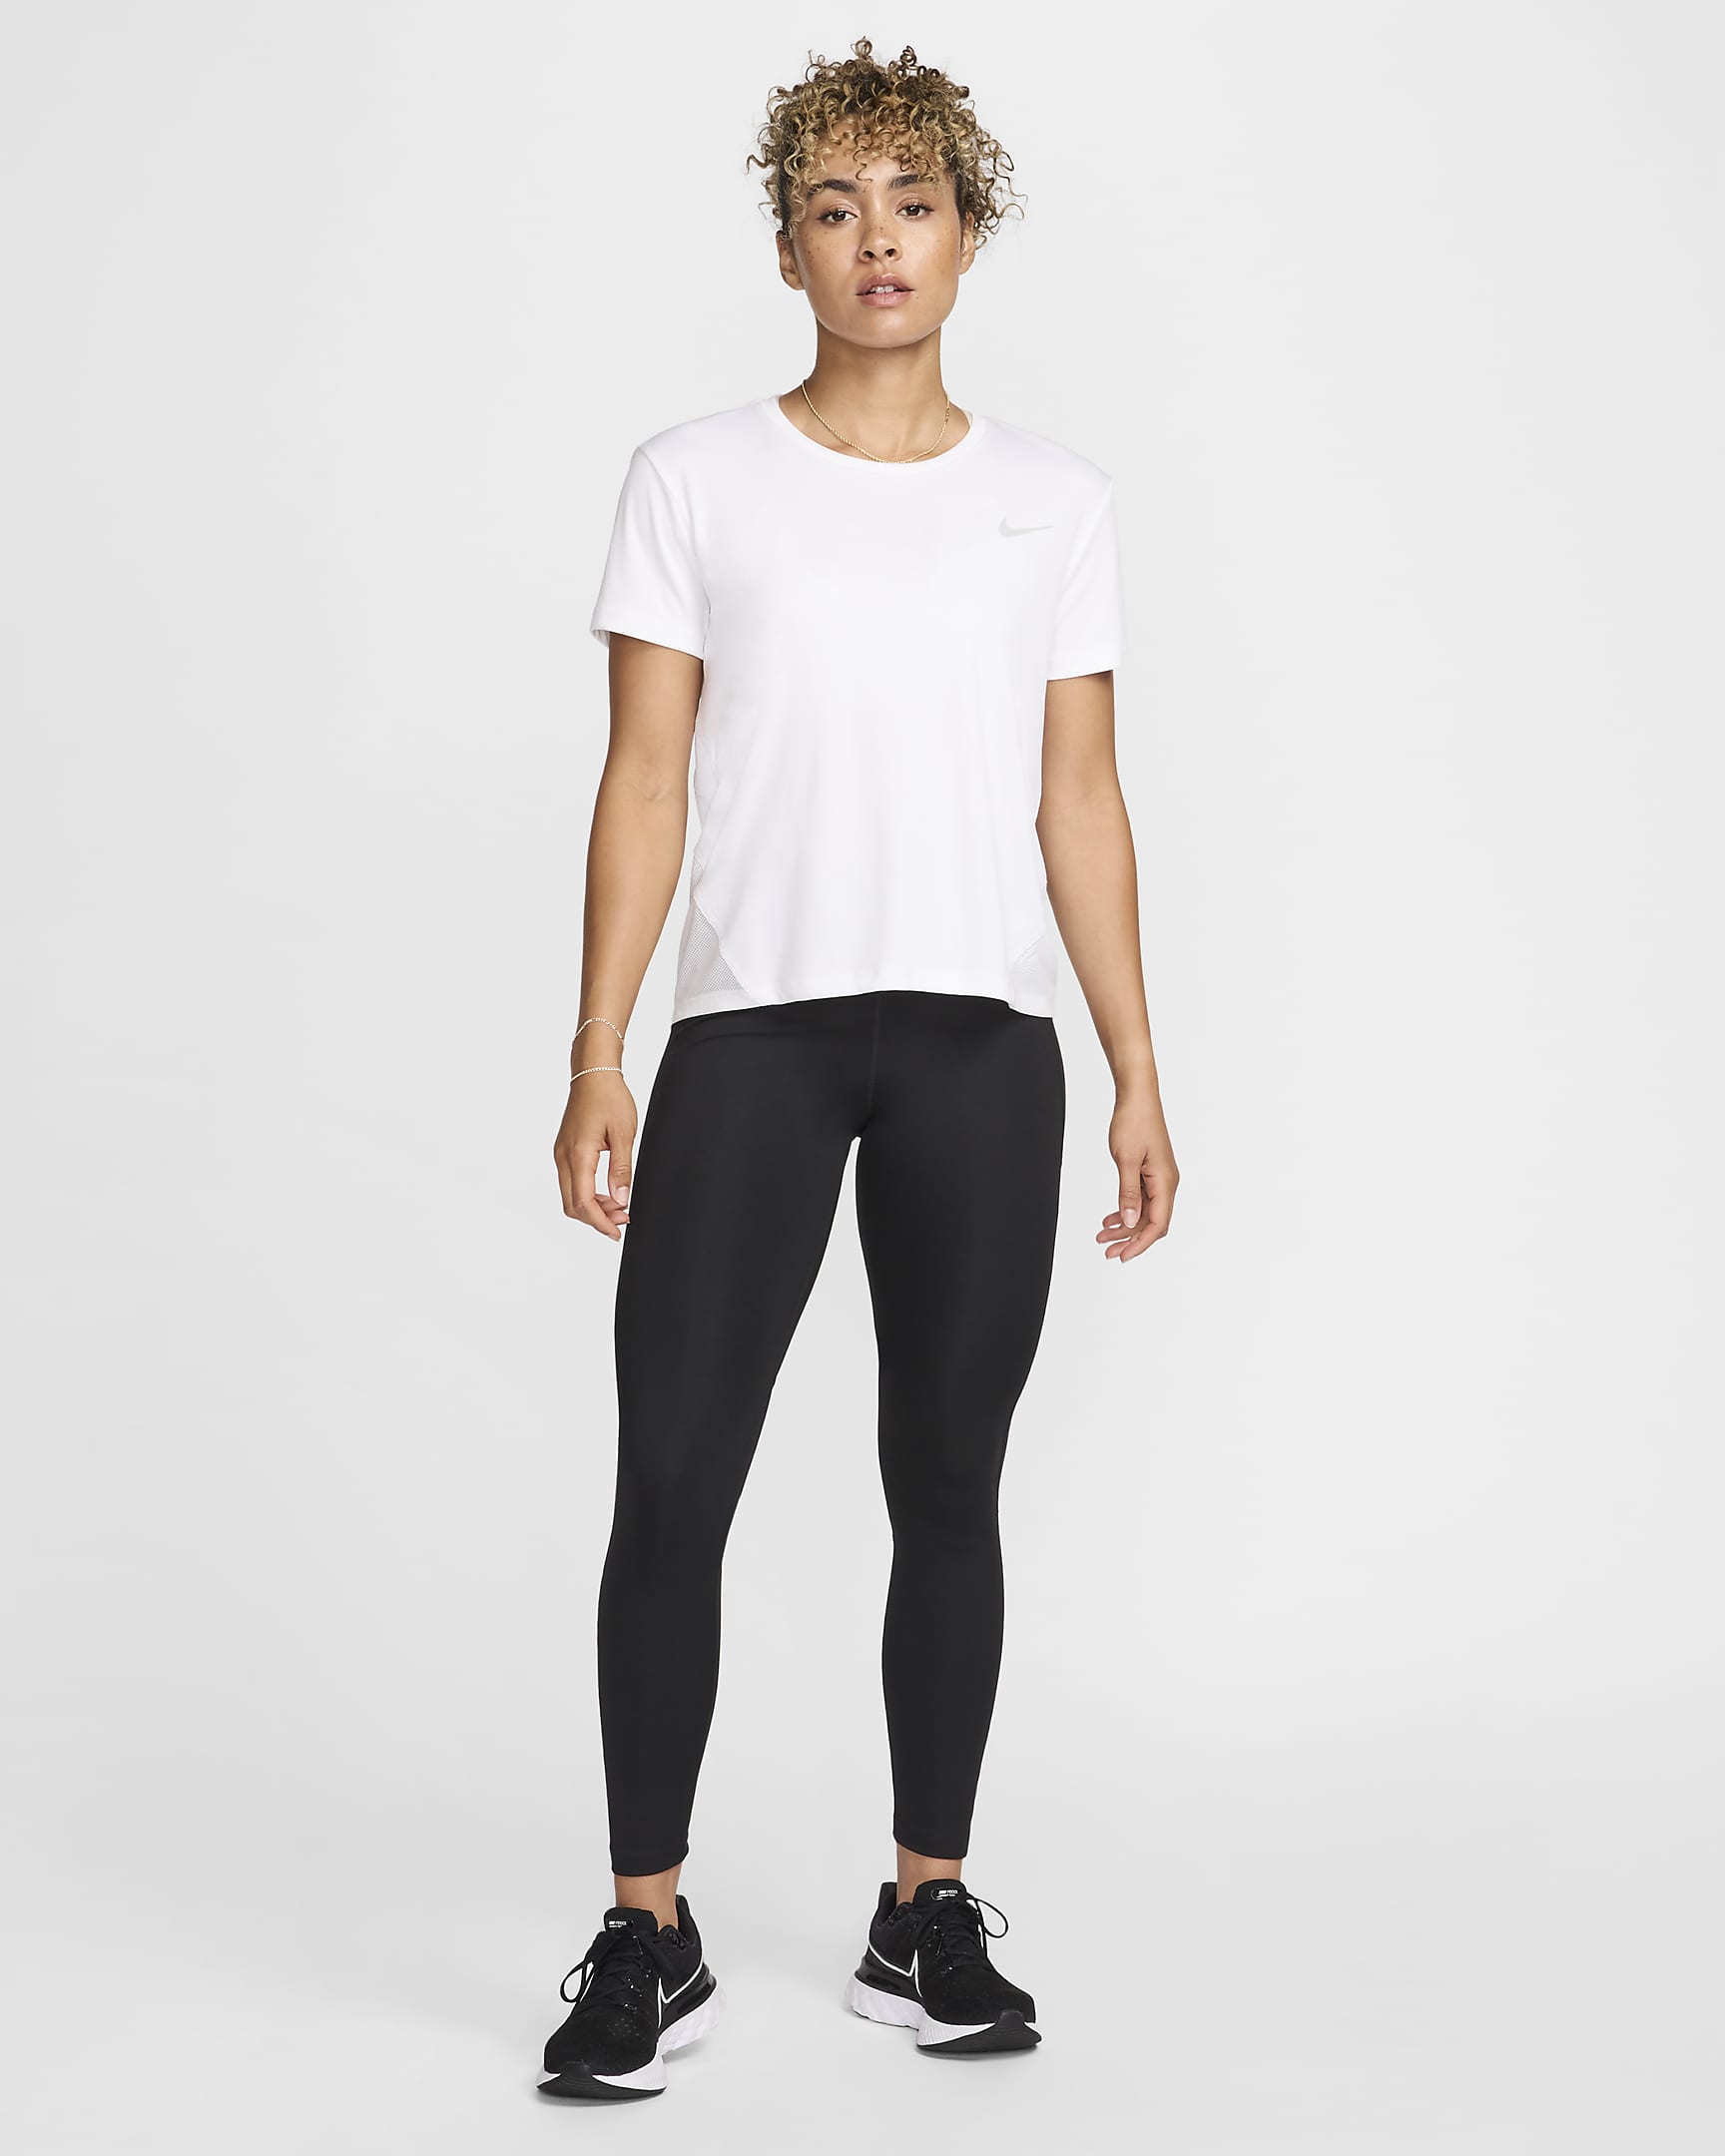 Nike Epic Fast Women's Mid-Rise Pocket Running Leggings. Nike UK